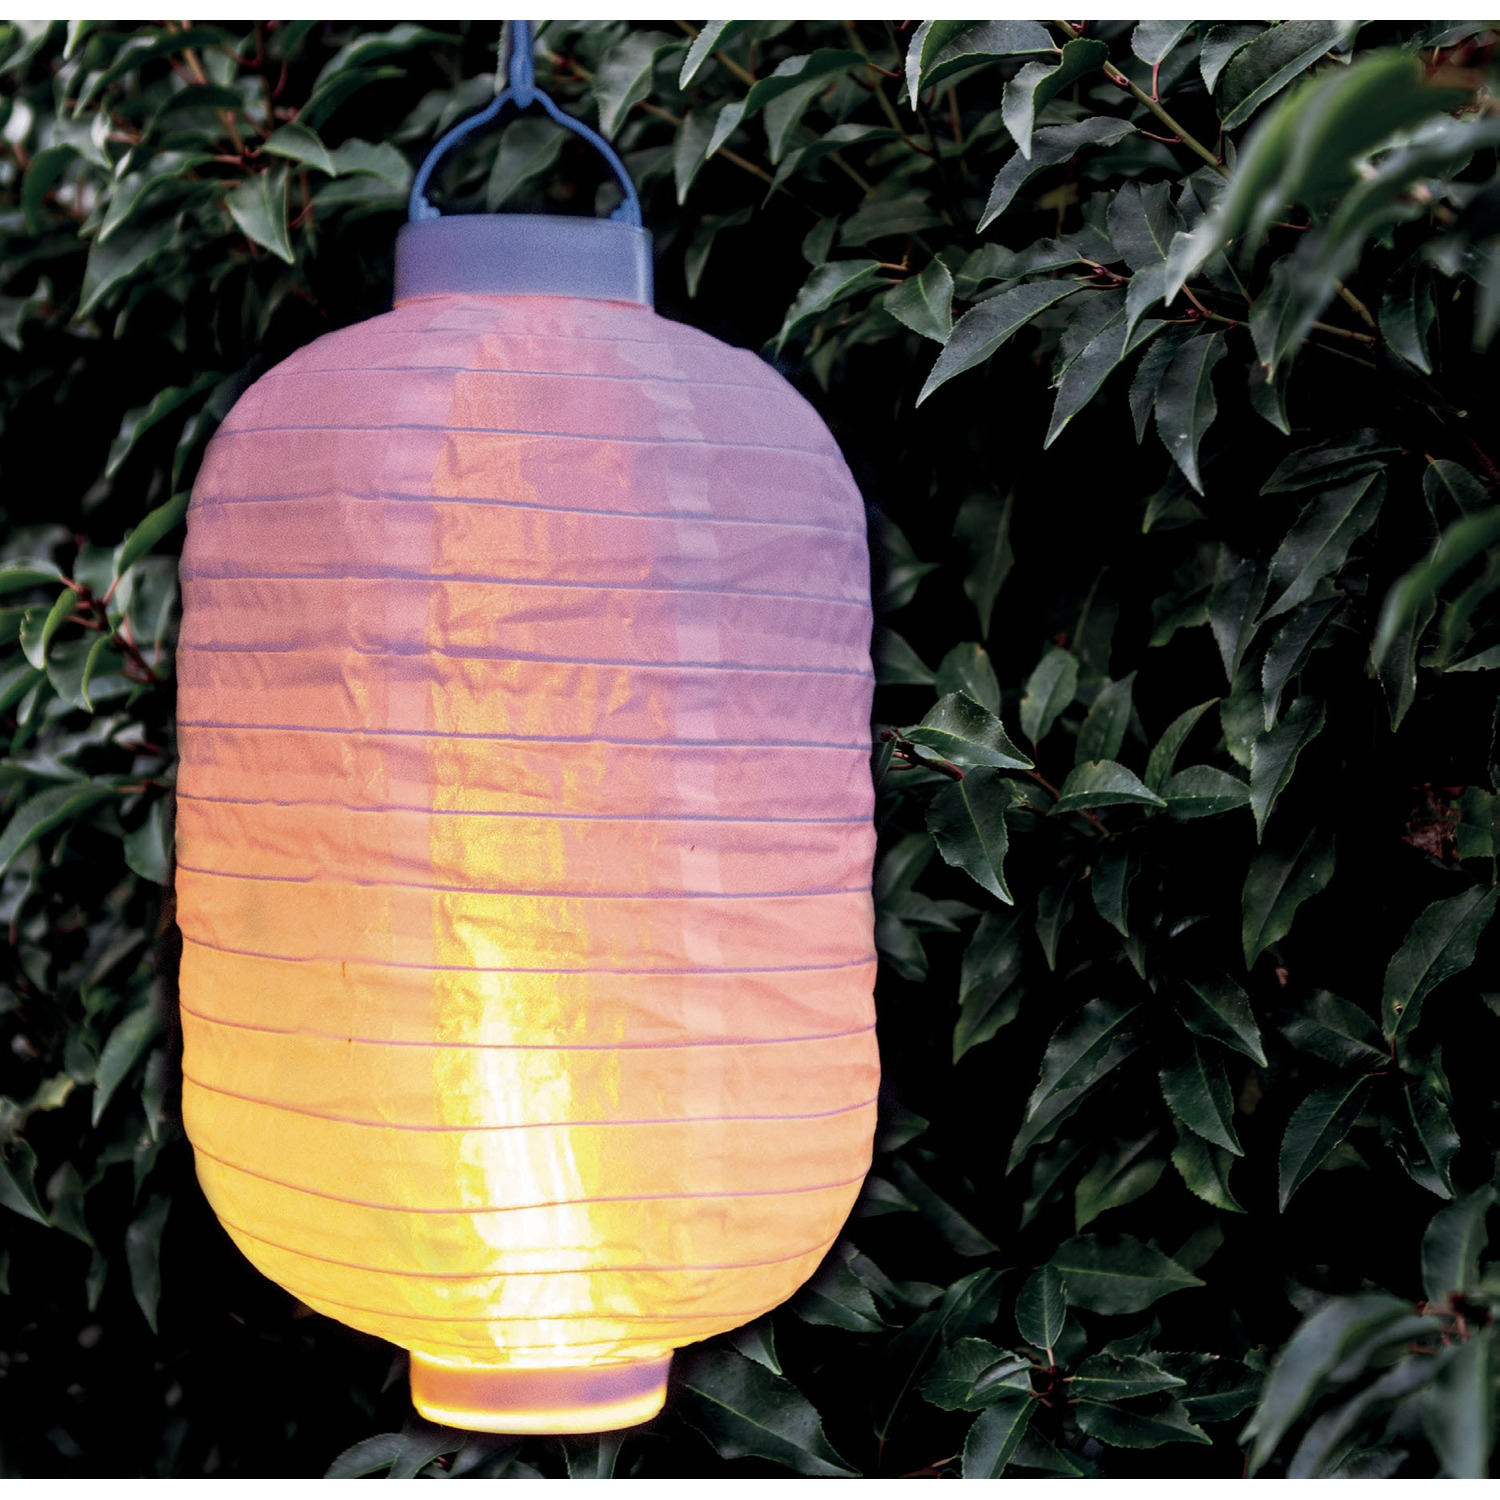 1x stuks luxe solar lampion/lampionnen wit met realistisch vlameffect 20 x 30 cm